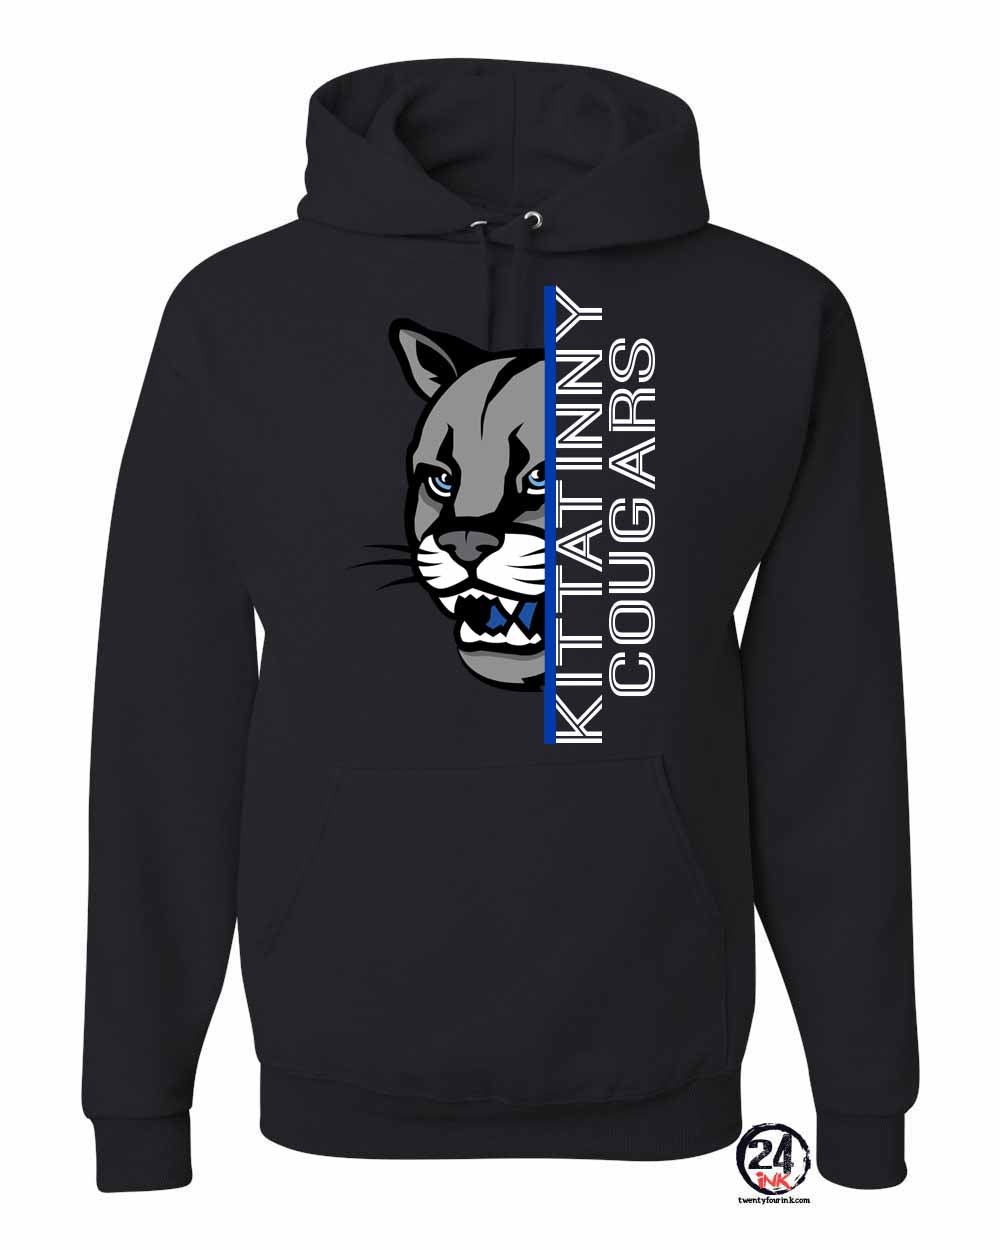 KRHS Design 3 Hooded Sweatshirt